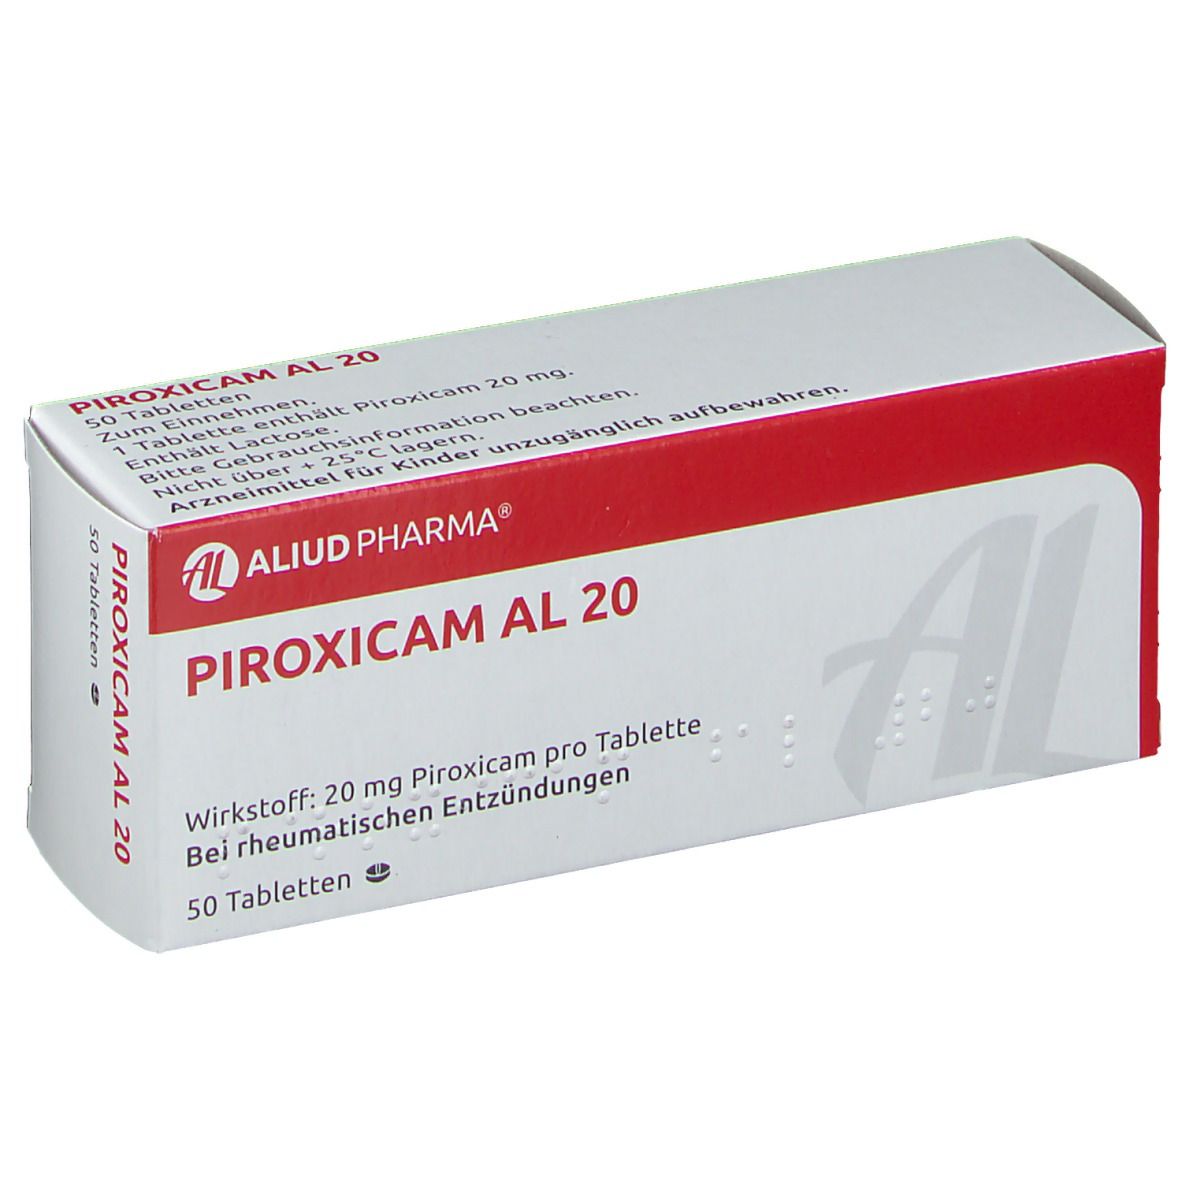 Piroxicam AL 20